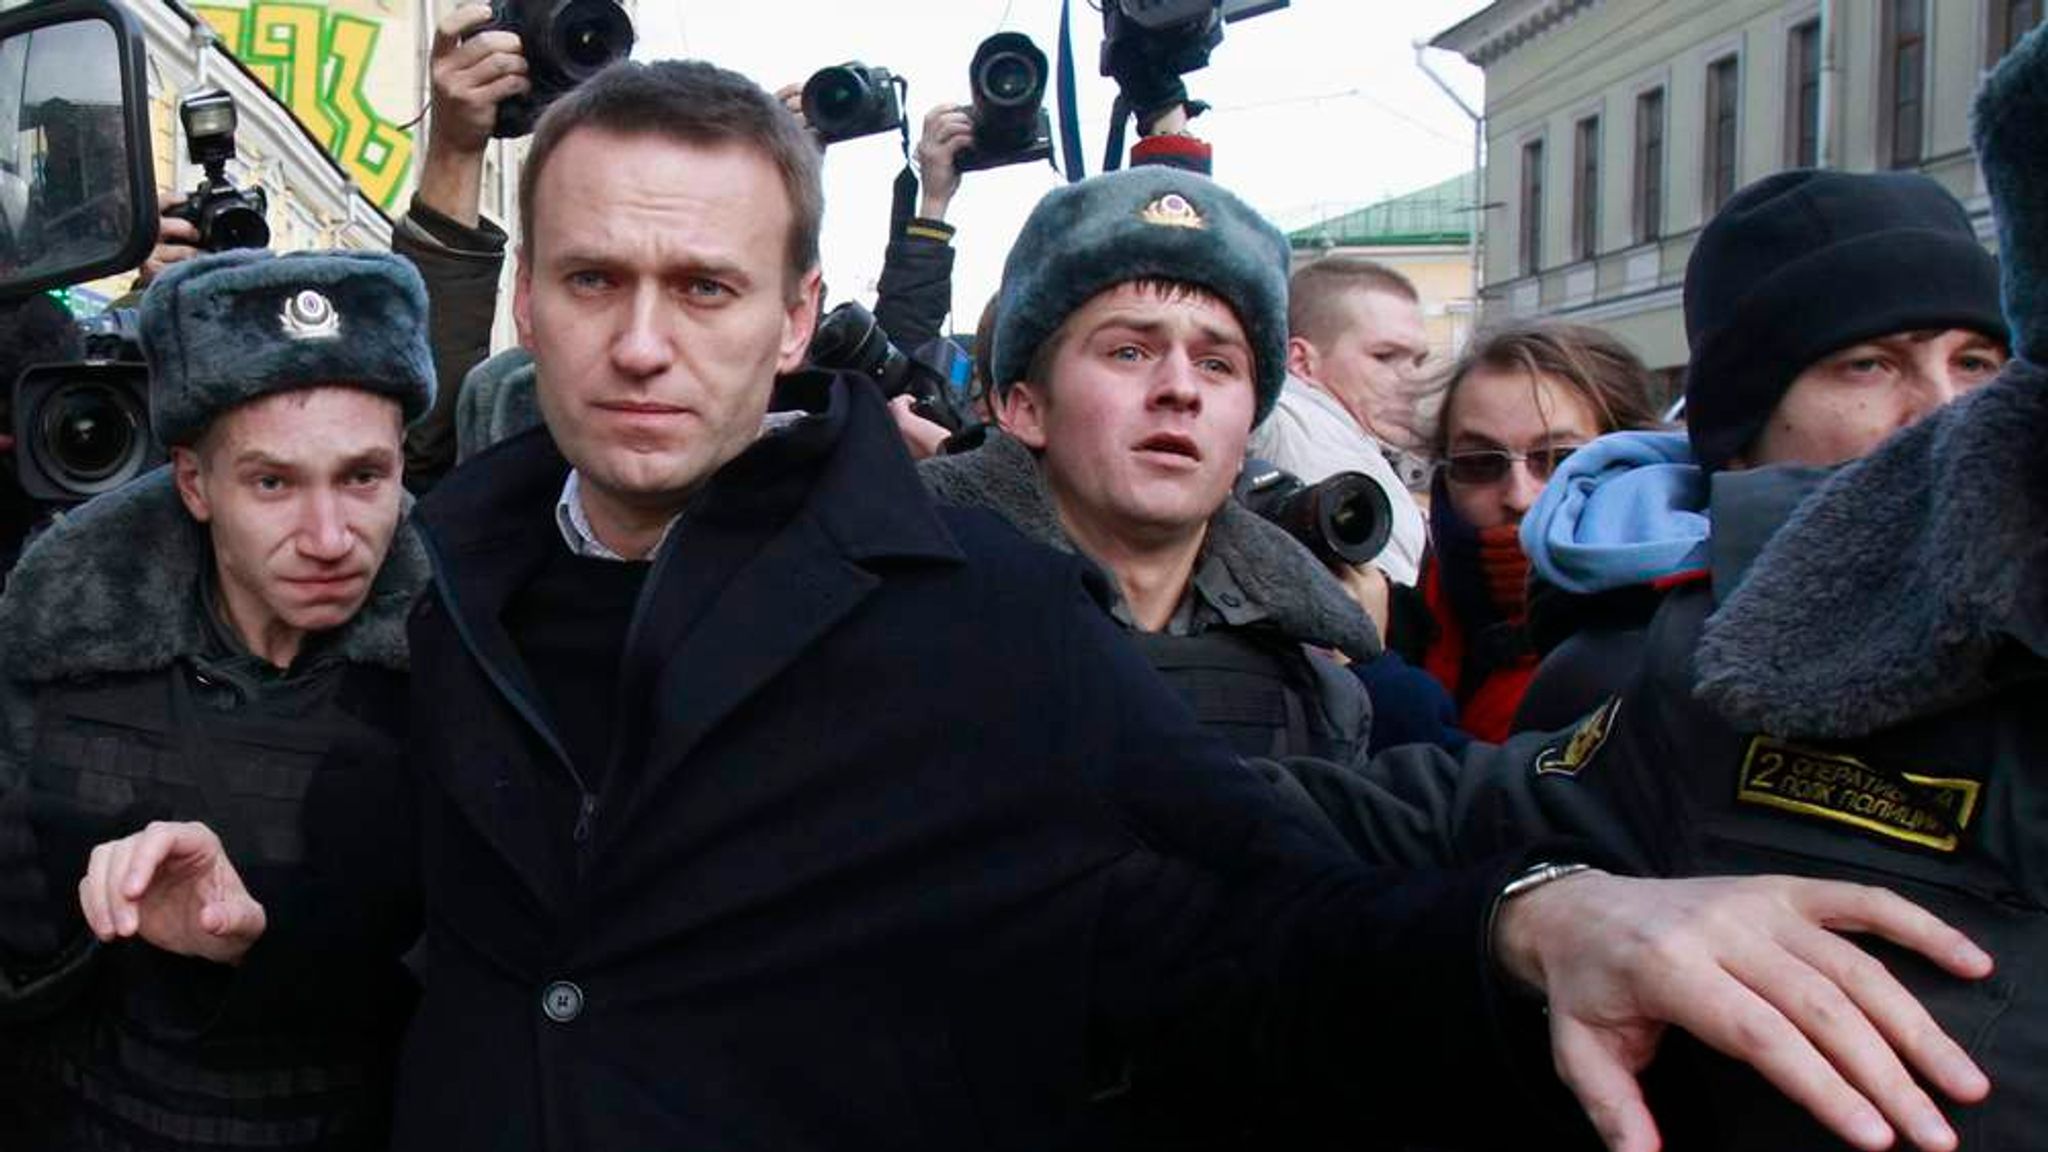 Назначенная оппозиция. Оппозиционеры Навальный и Удальцов. Навальный на Болотной 2012. Навальный Немцов оппозиция. Оппозиция в России.